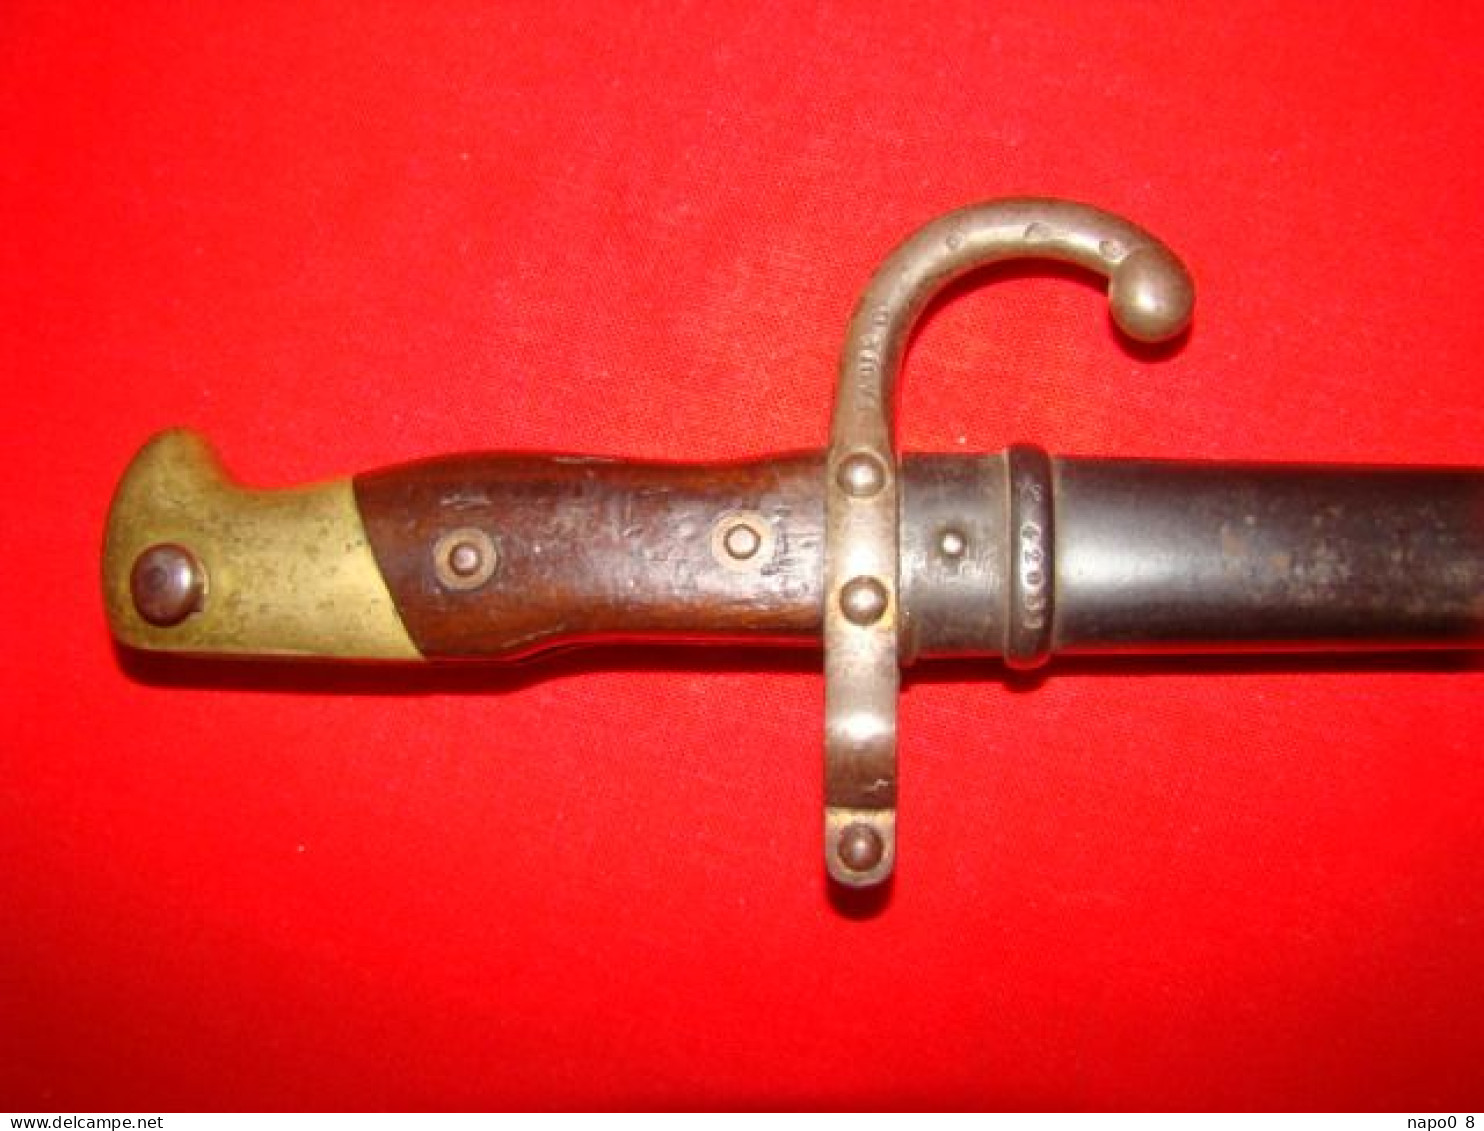 épée baïonnette Française Mle 1874 ( fabrication de Manufacture Autrichienne , usine de Steyr 1878) pour fusil Gras